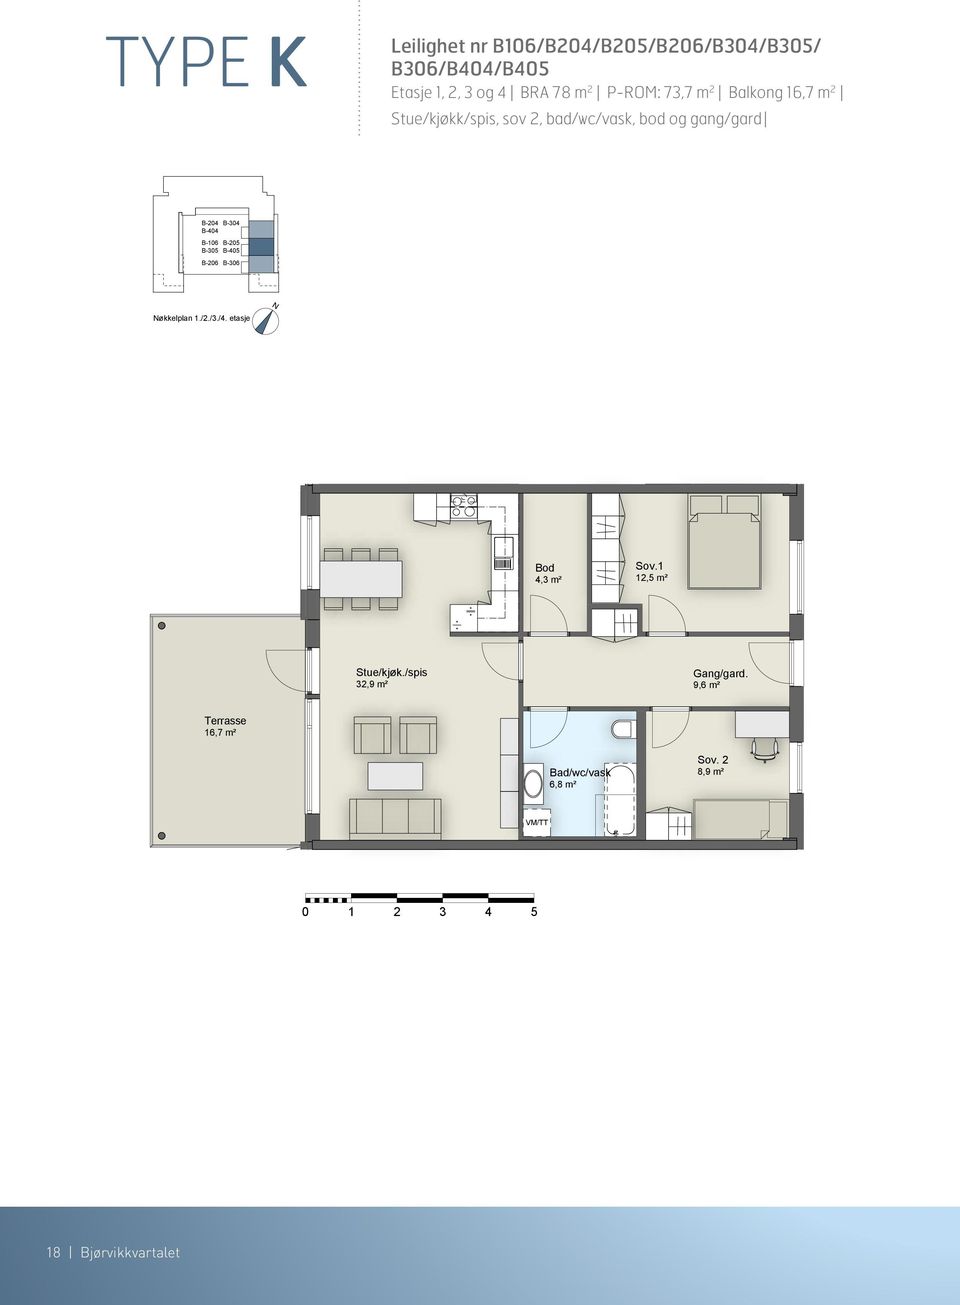 etasje 4,3 m² Sov.1 12,5 m² Stue/kjøk./spis 32,9 m² 9,6 m² Terrasse 16,7 m² Bad/wc/vask 6,8 m² Sov.